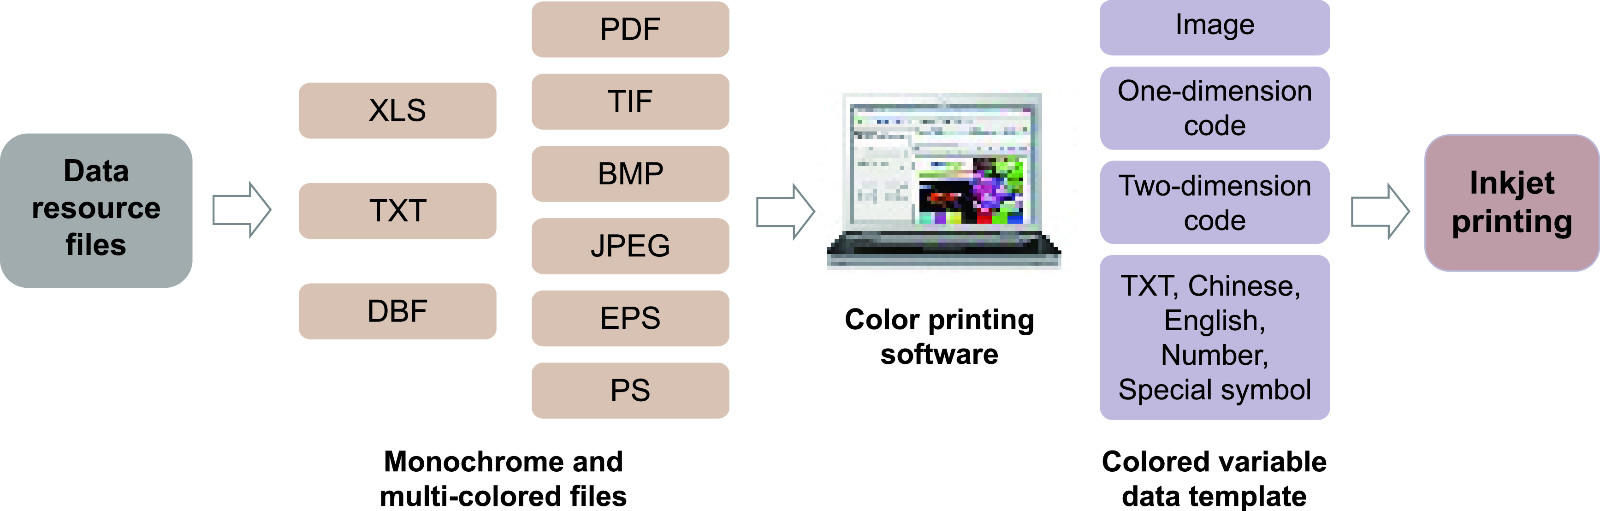 Arojet color inkjet coding machine manufacturer for film